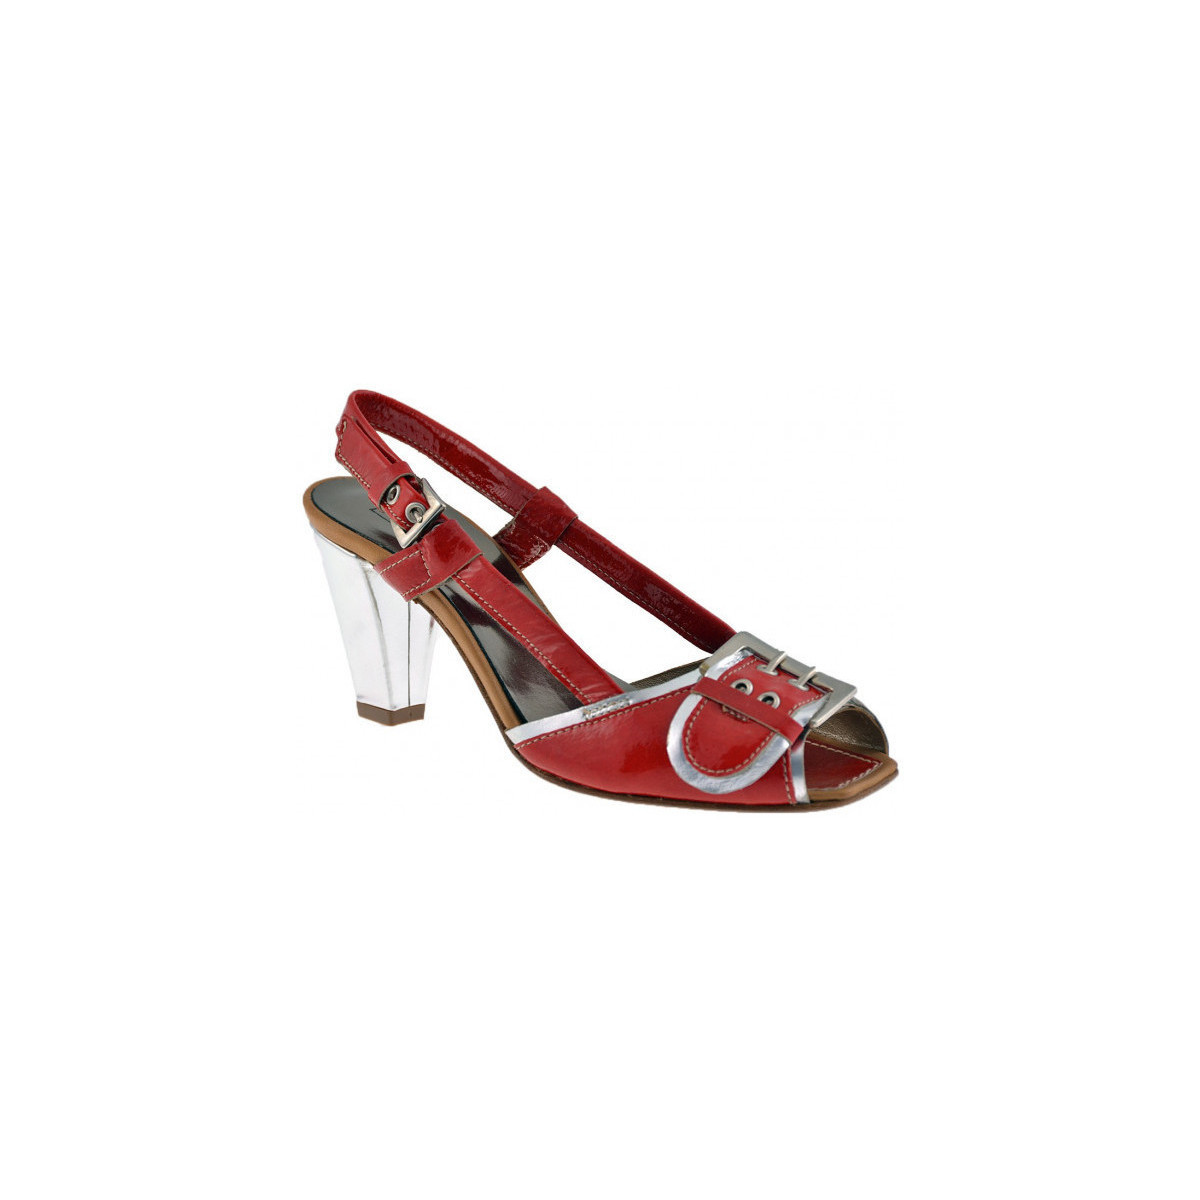 Chaussures Femme Baskets mode Progetto C225talon60 Rouge